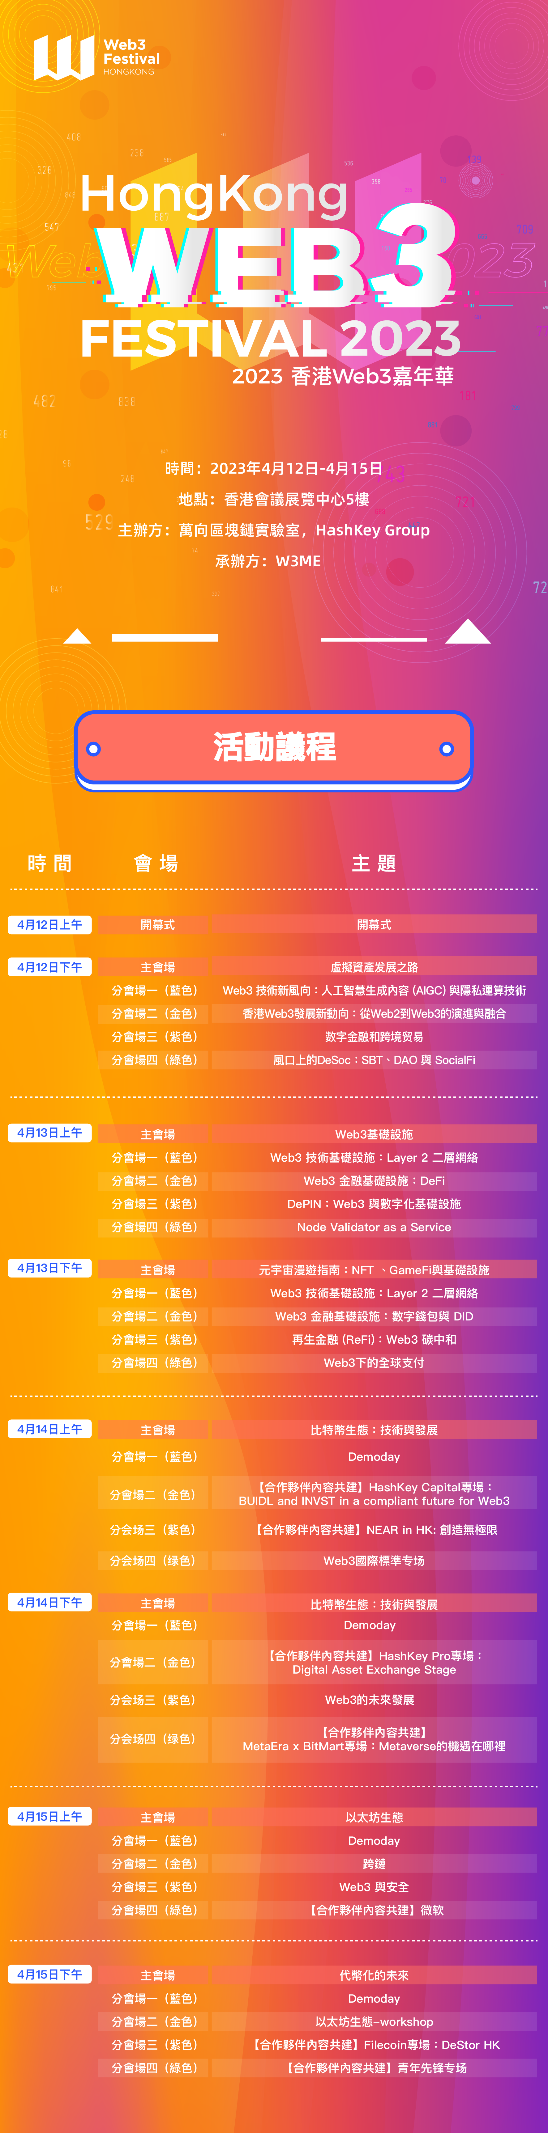 2023香港Web3嘉年华“DeFi”主题论坛将深入探讨DeFi2.0核心议题，大会常规票最后一天！